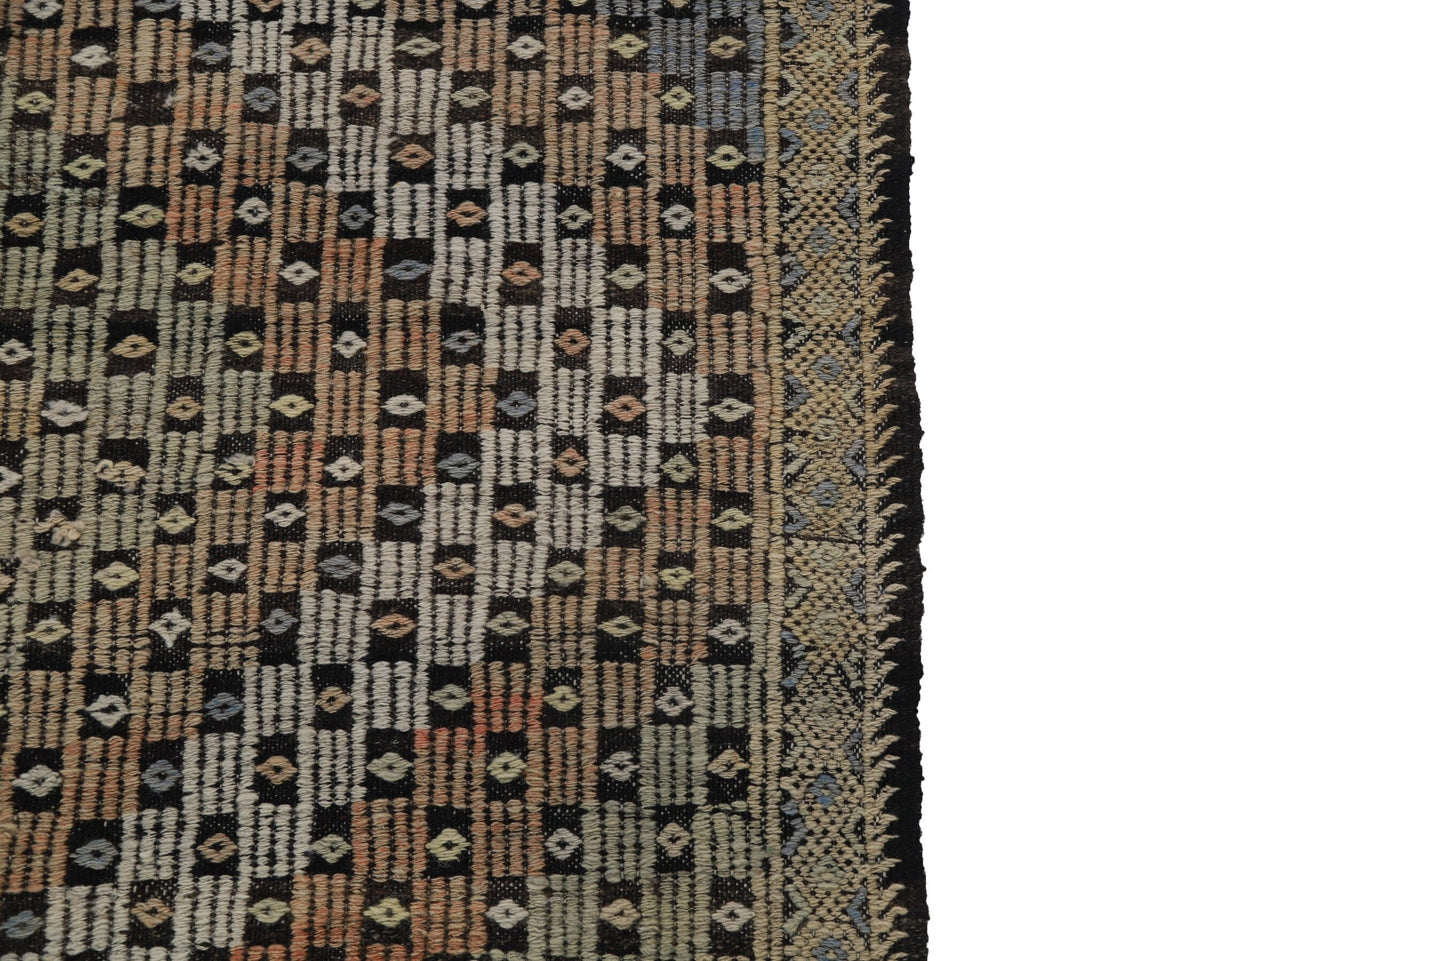 Faded Turkish Kilim rug, Vintage rug kilim, Kilim rug one of a kind , 6x9 Kilim rug, Pastel kilim rug, Anatolia rug, 8131